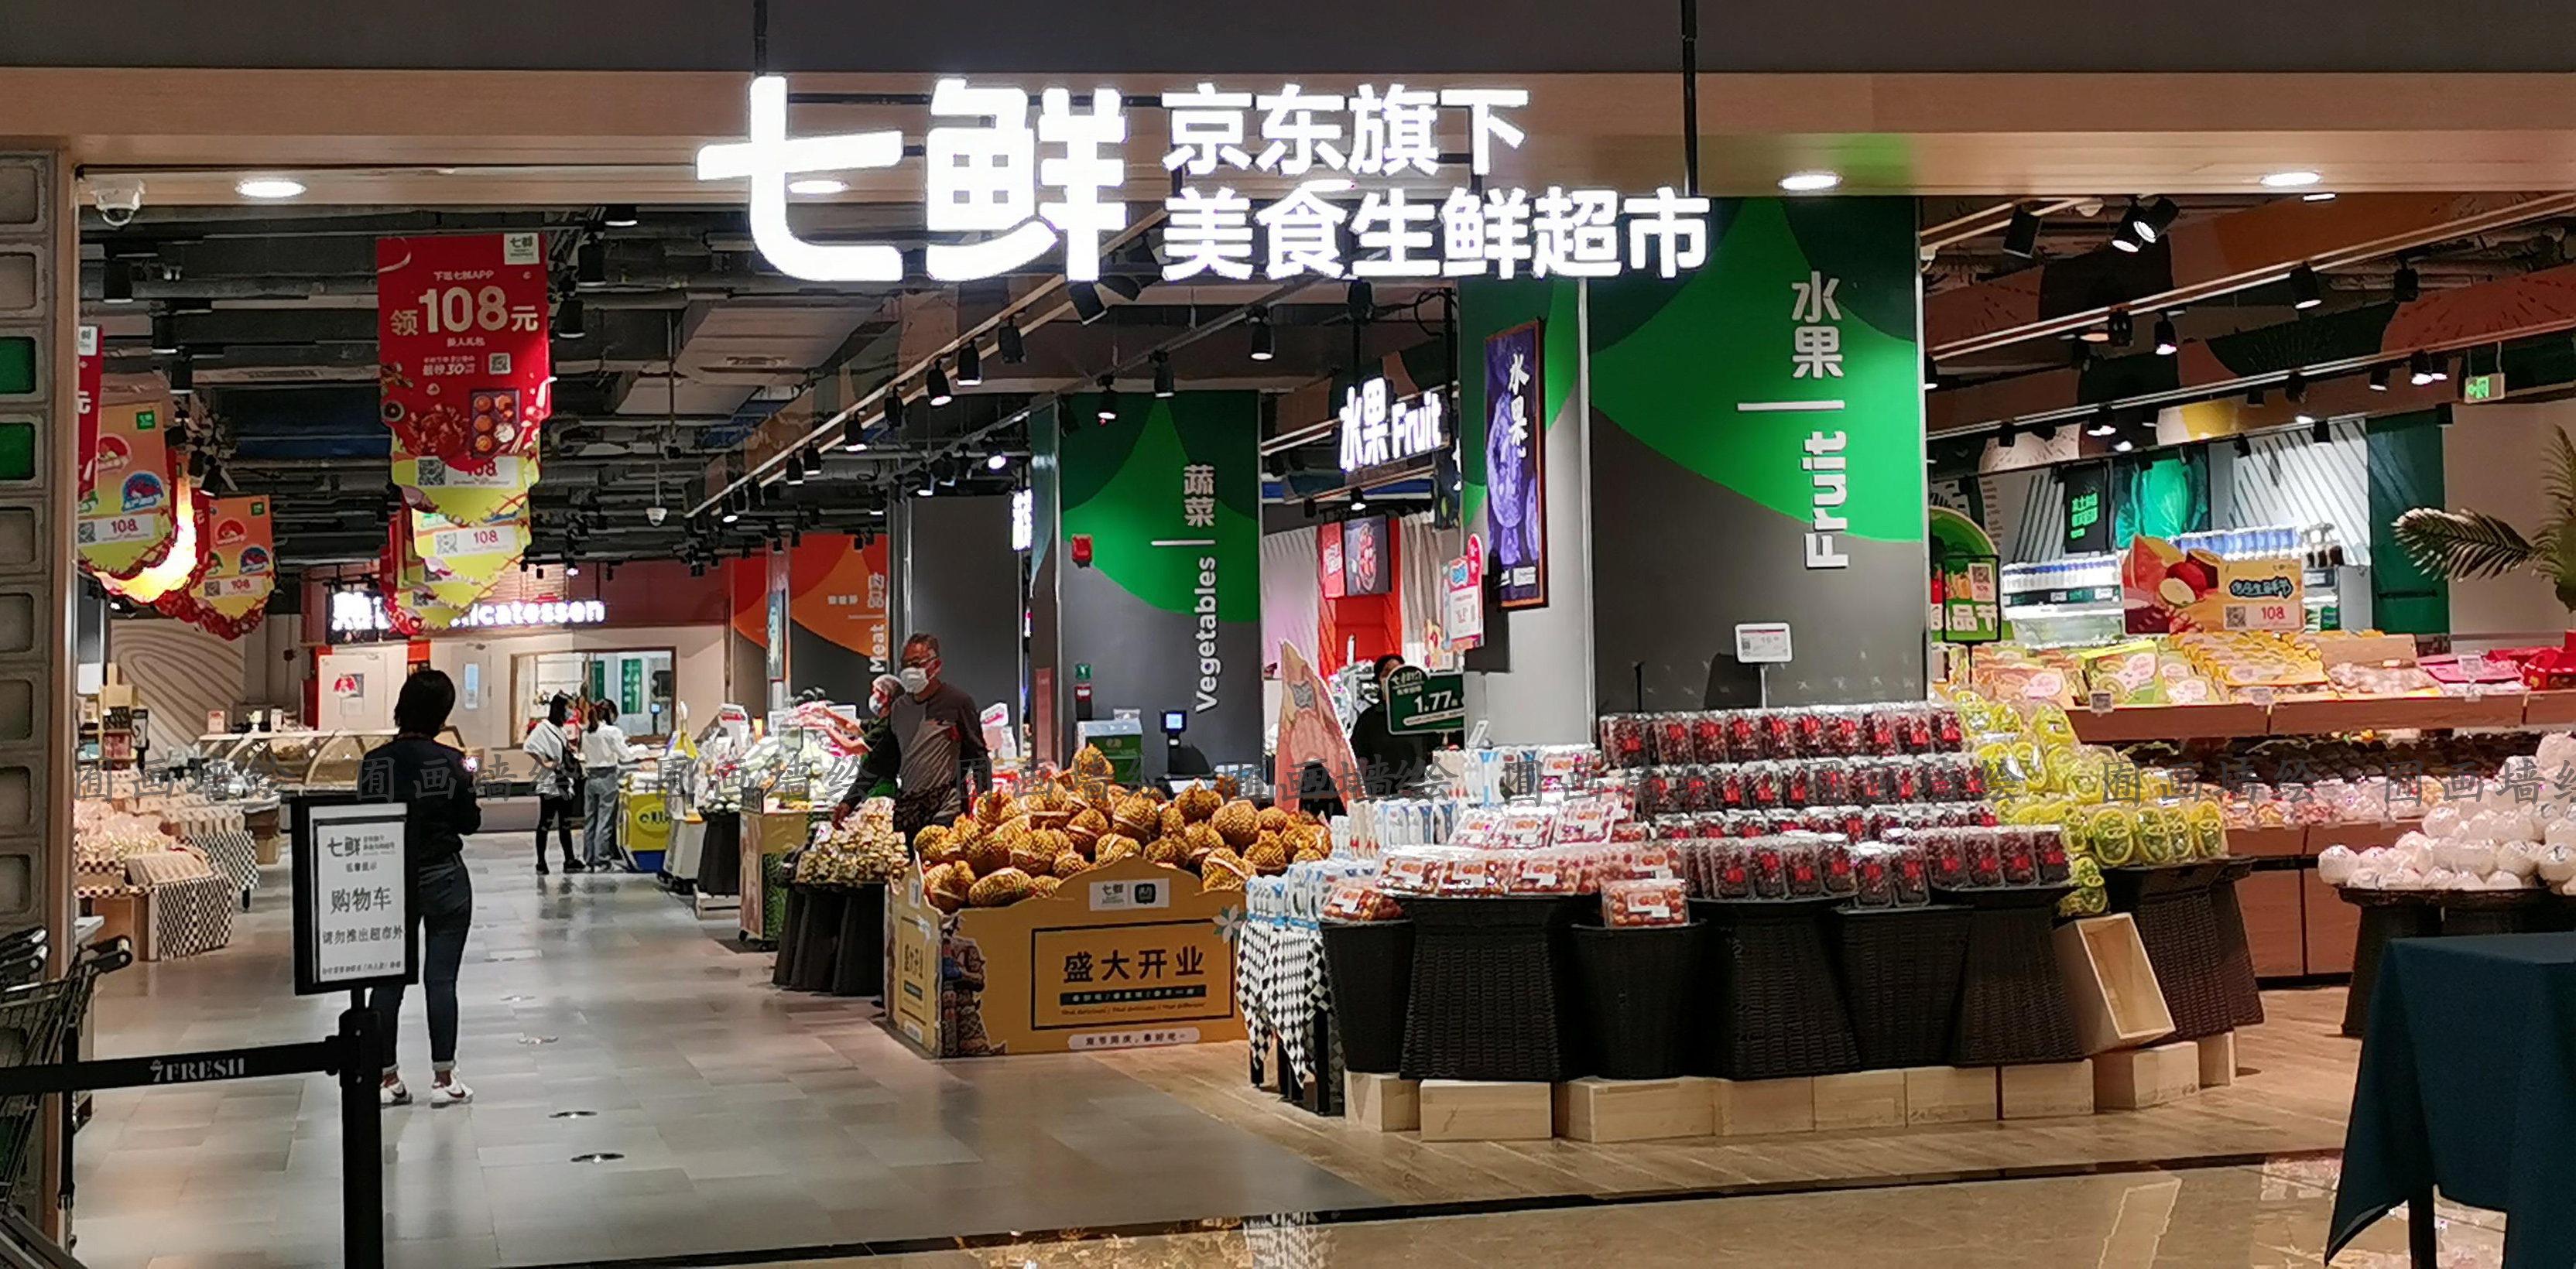 广州市荔湾区悦汇城七鲜新鲜超市大型标识标注墙绘